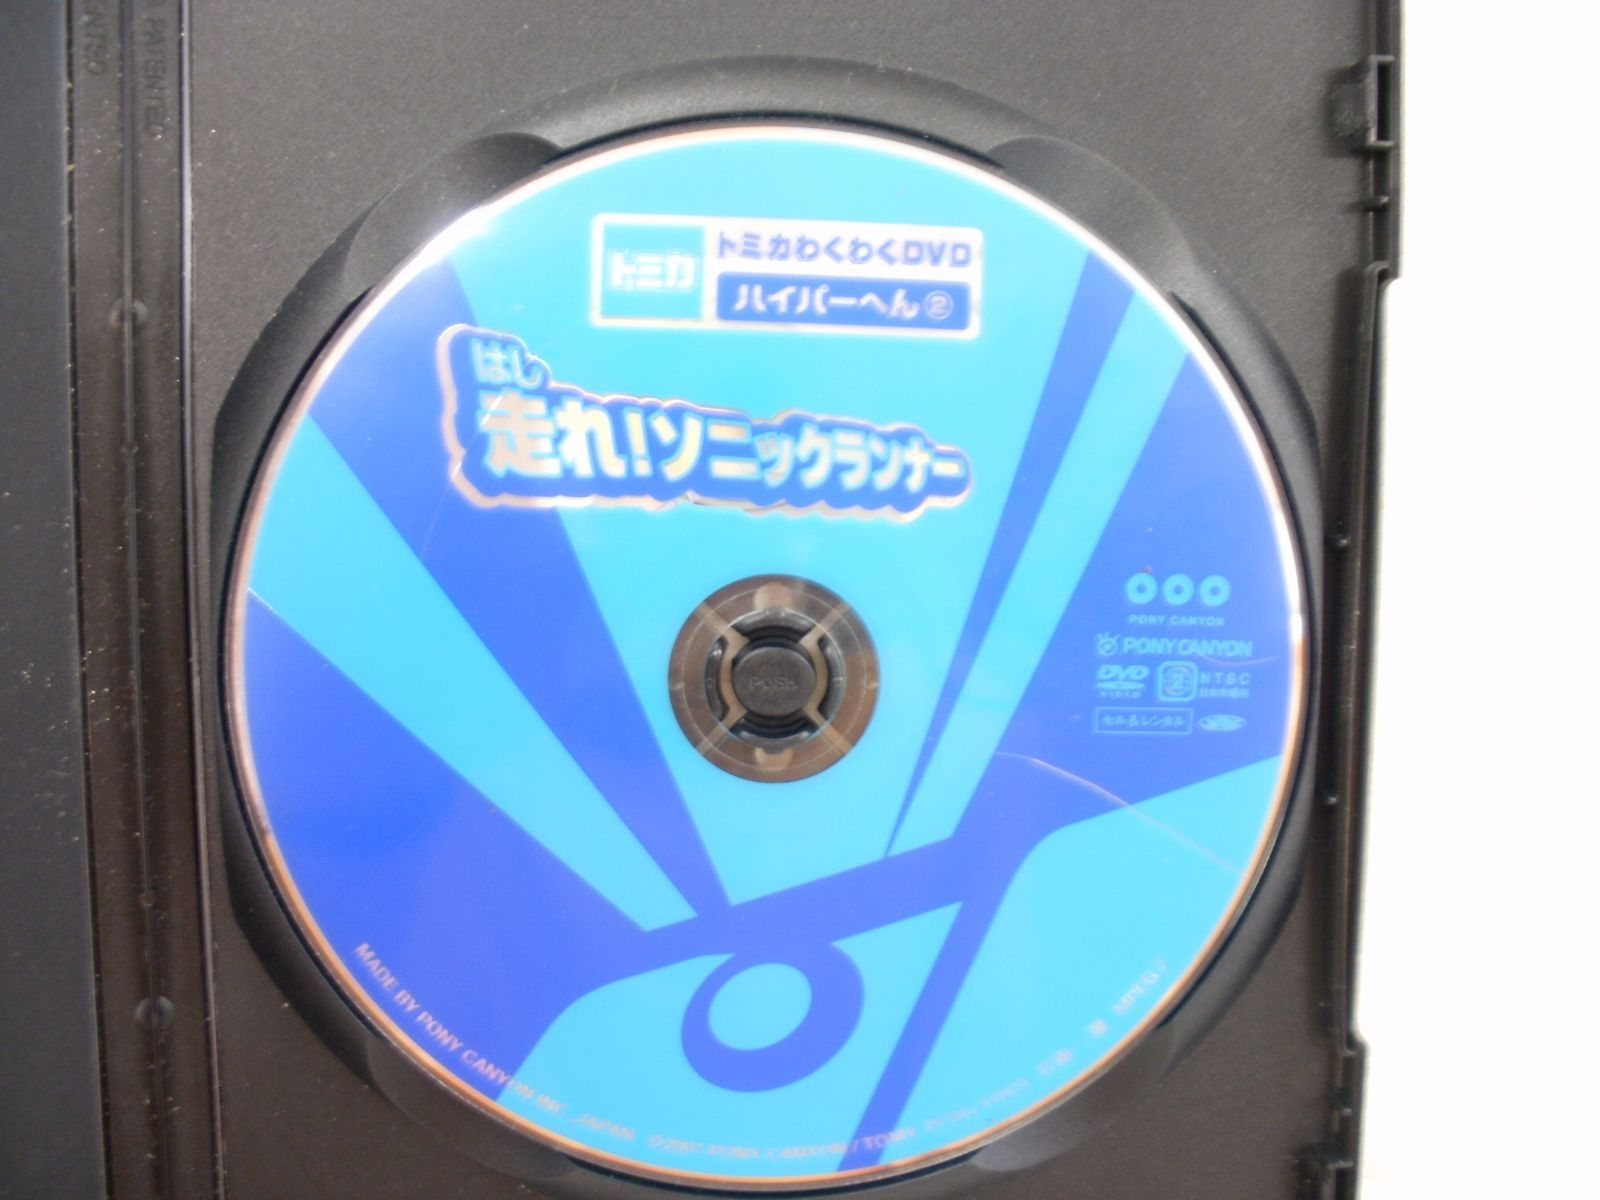 トミカわくわくDVD ハイパーへん(2)走れ!ソニックランナー DVD